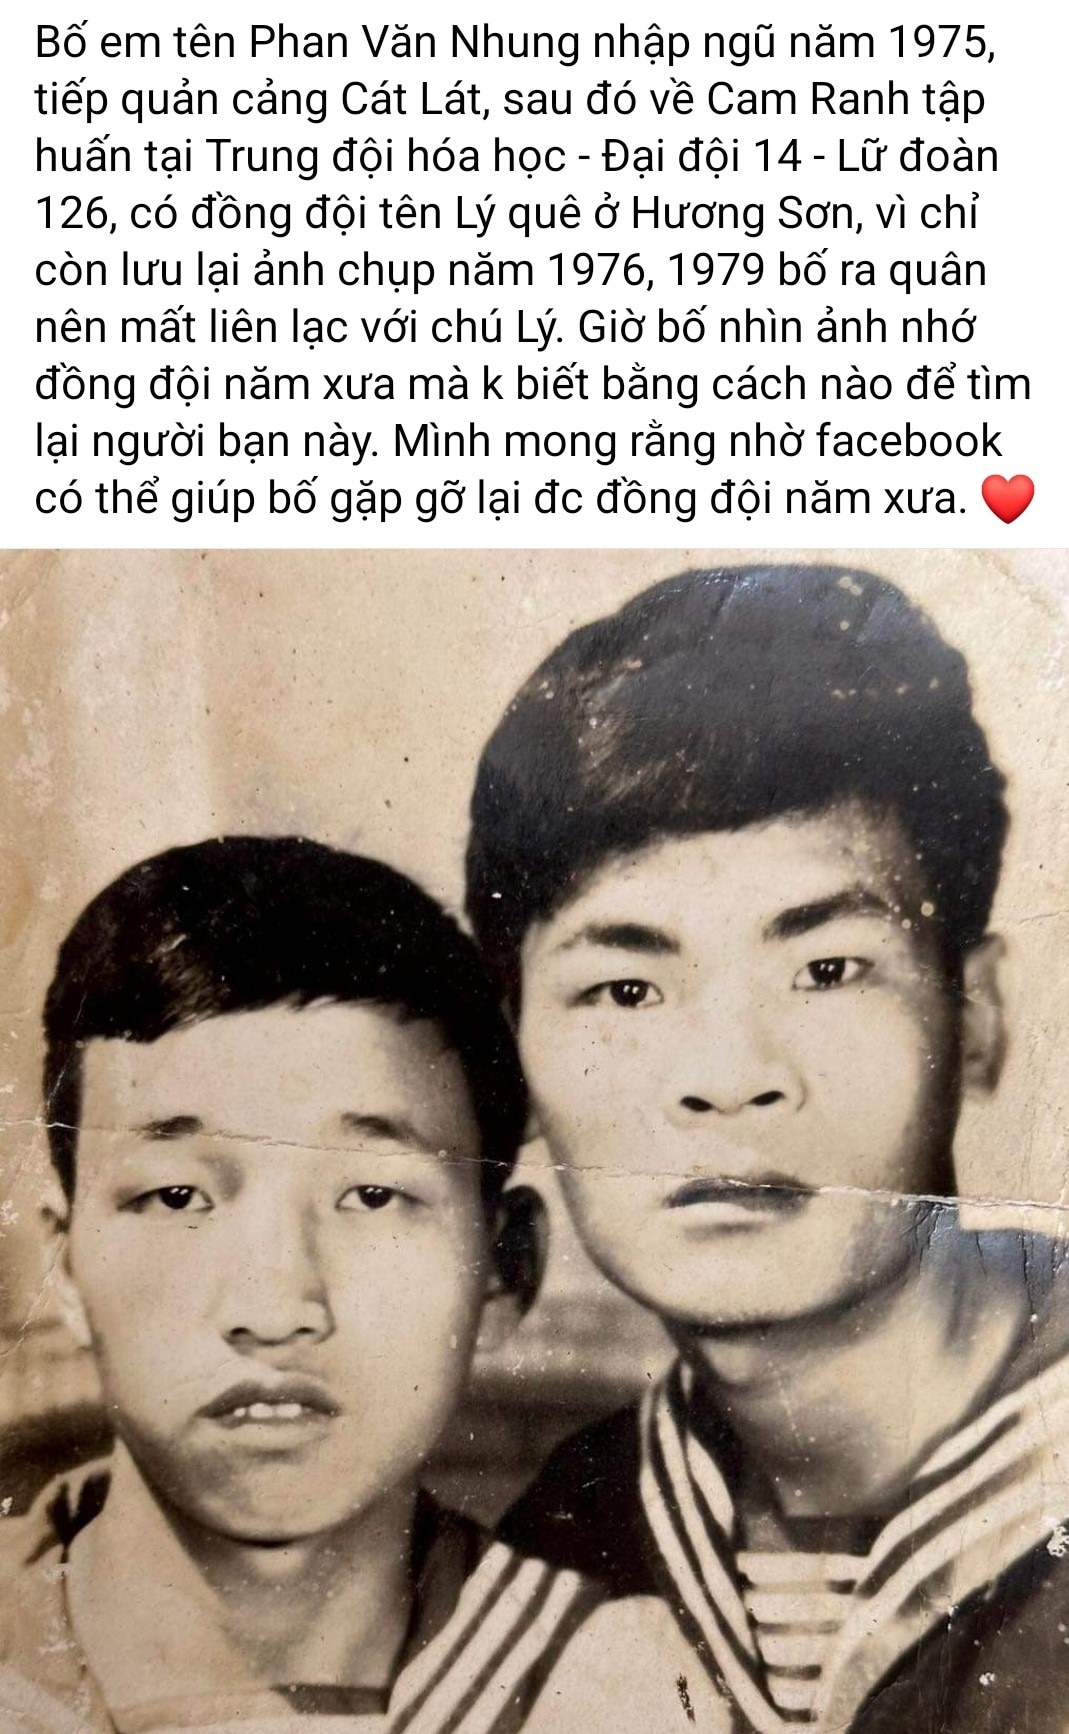 49 năm xa cách, 2 cựu binh vỡ òa cảm xúc vì tìm thấy nhau trên Facebook - 1